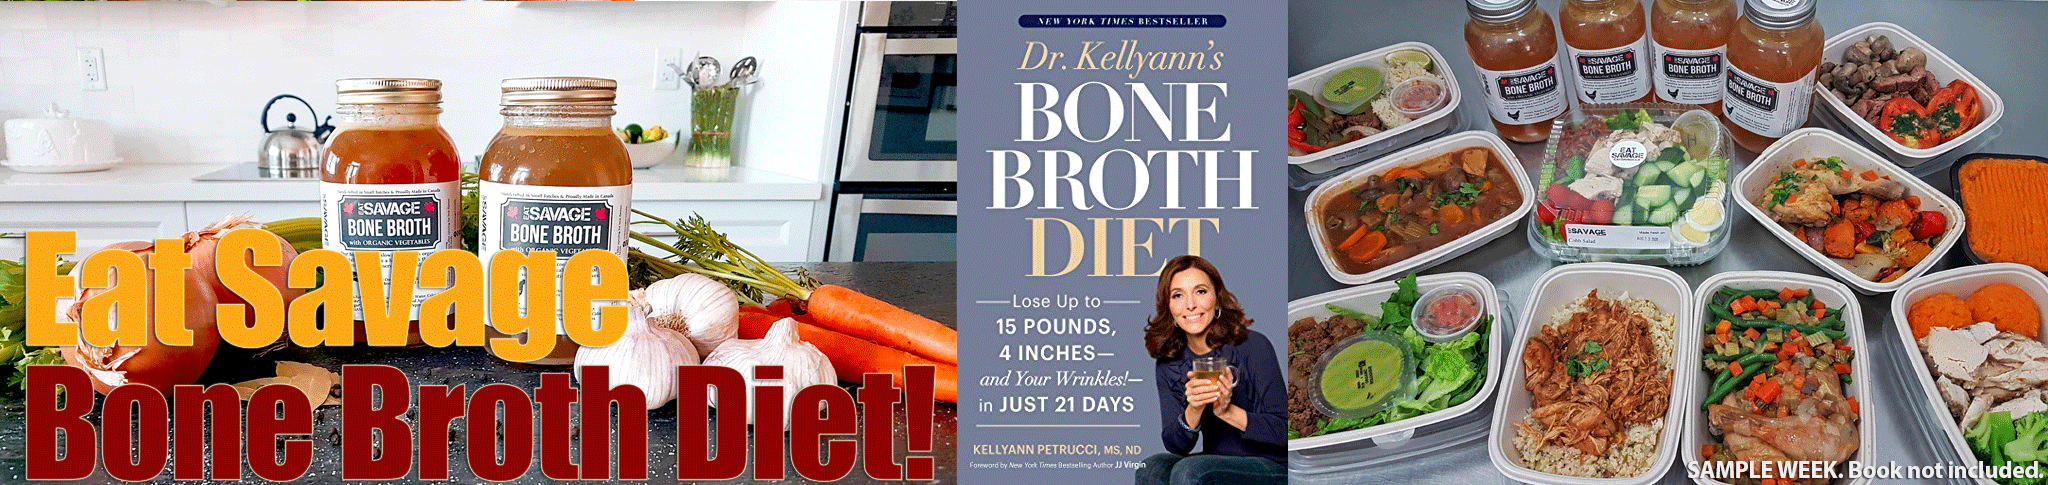 Eat Savage offers Bone Broth Diet Meal Plan in Toronto / GTA